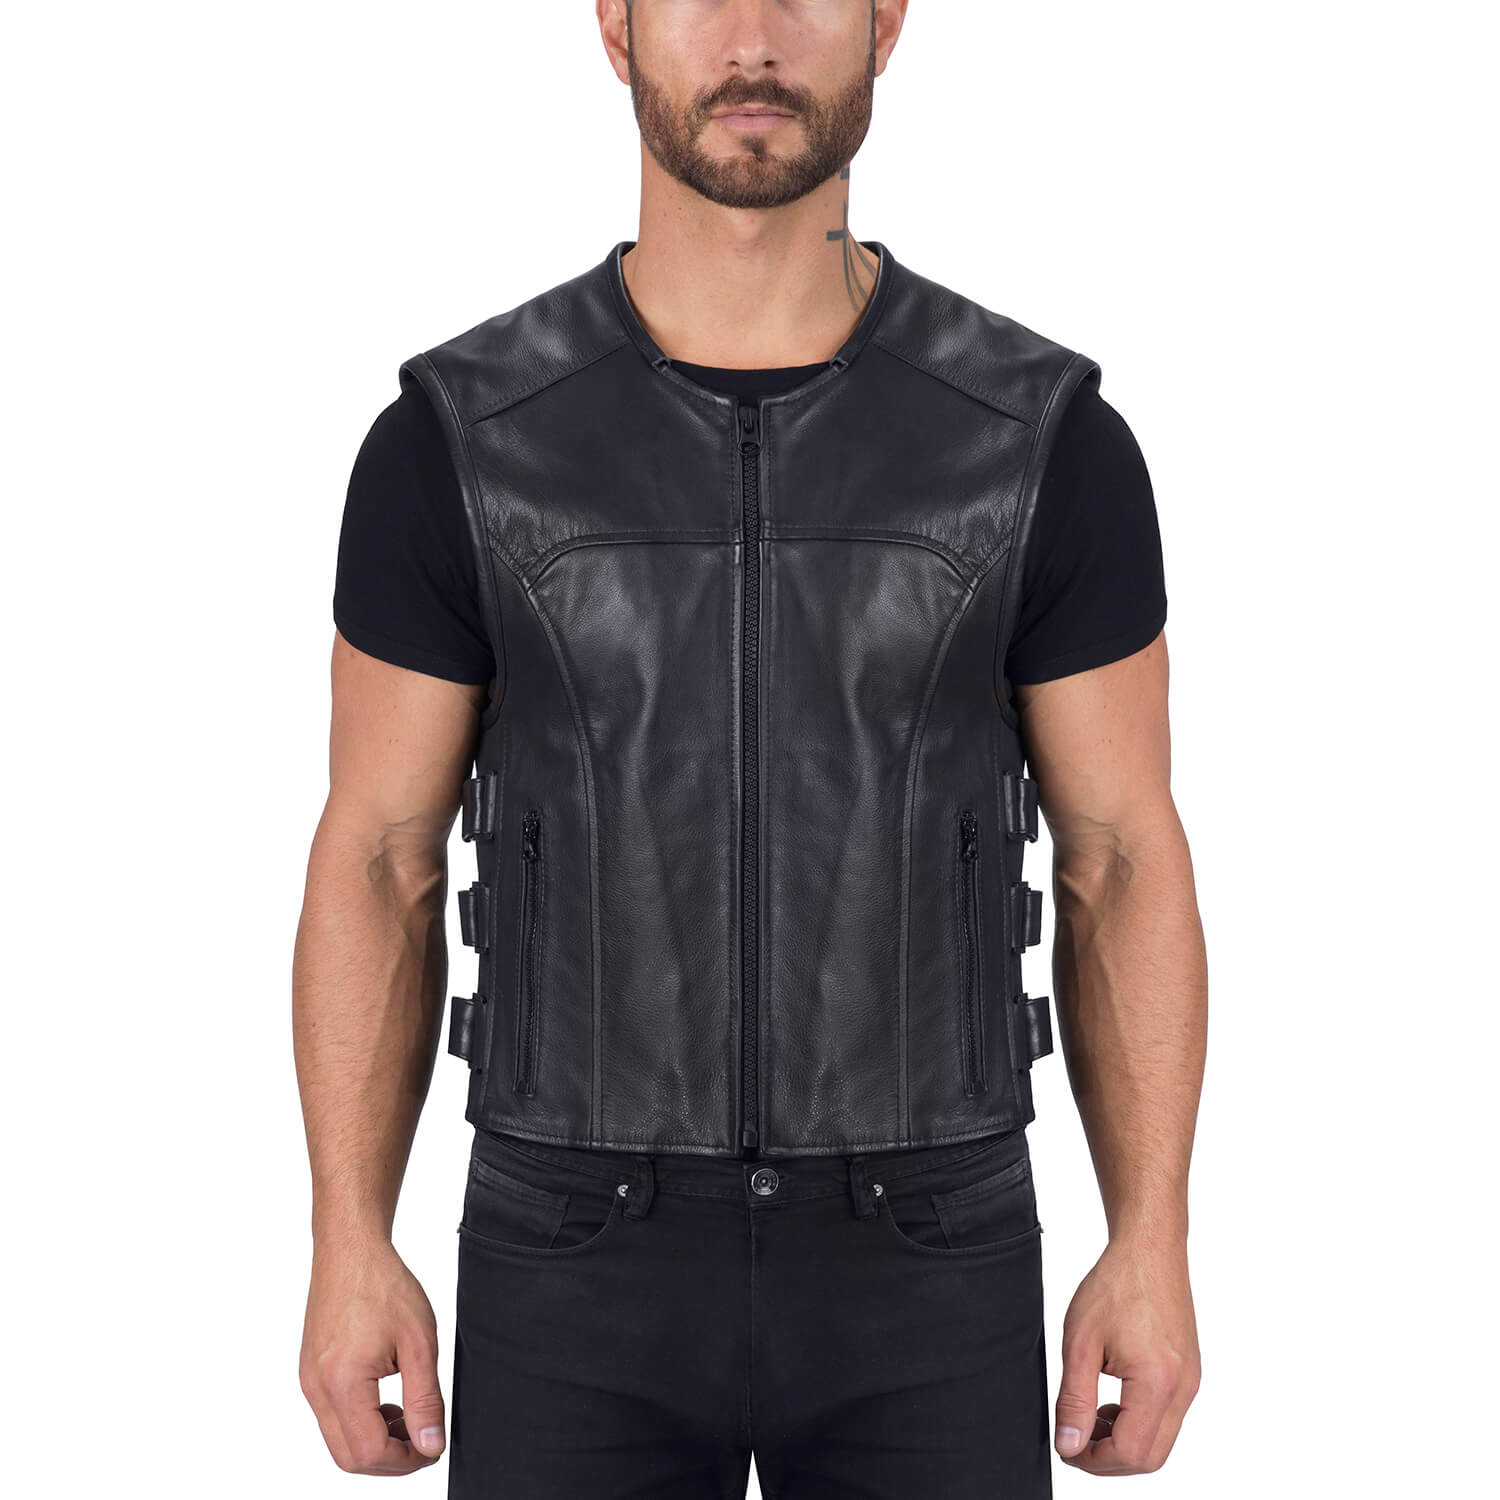 sleeveless vest for men